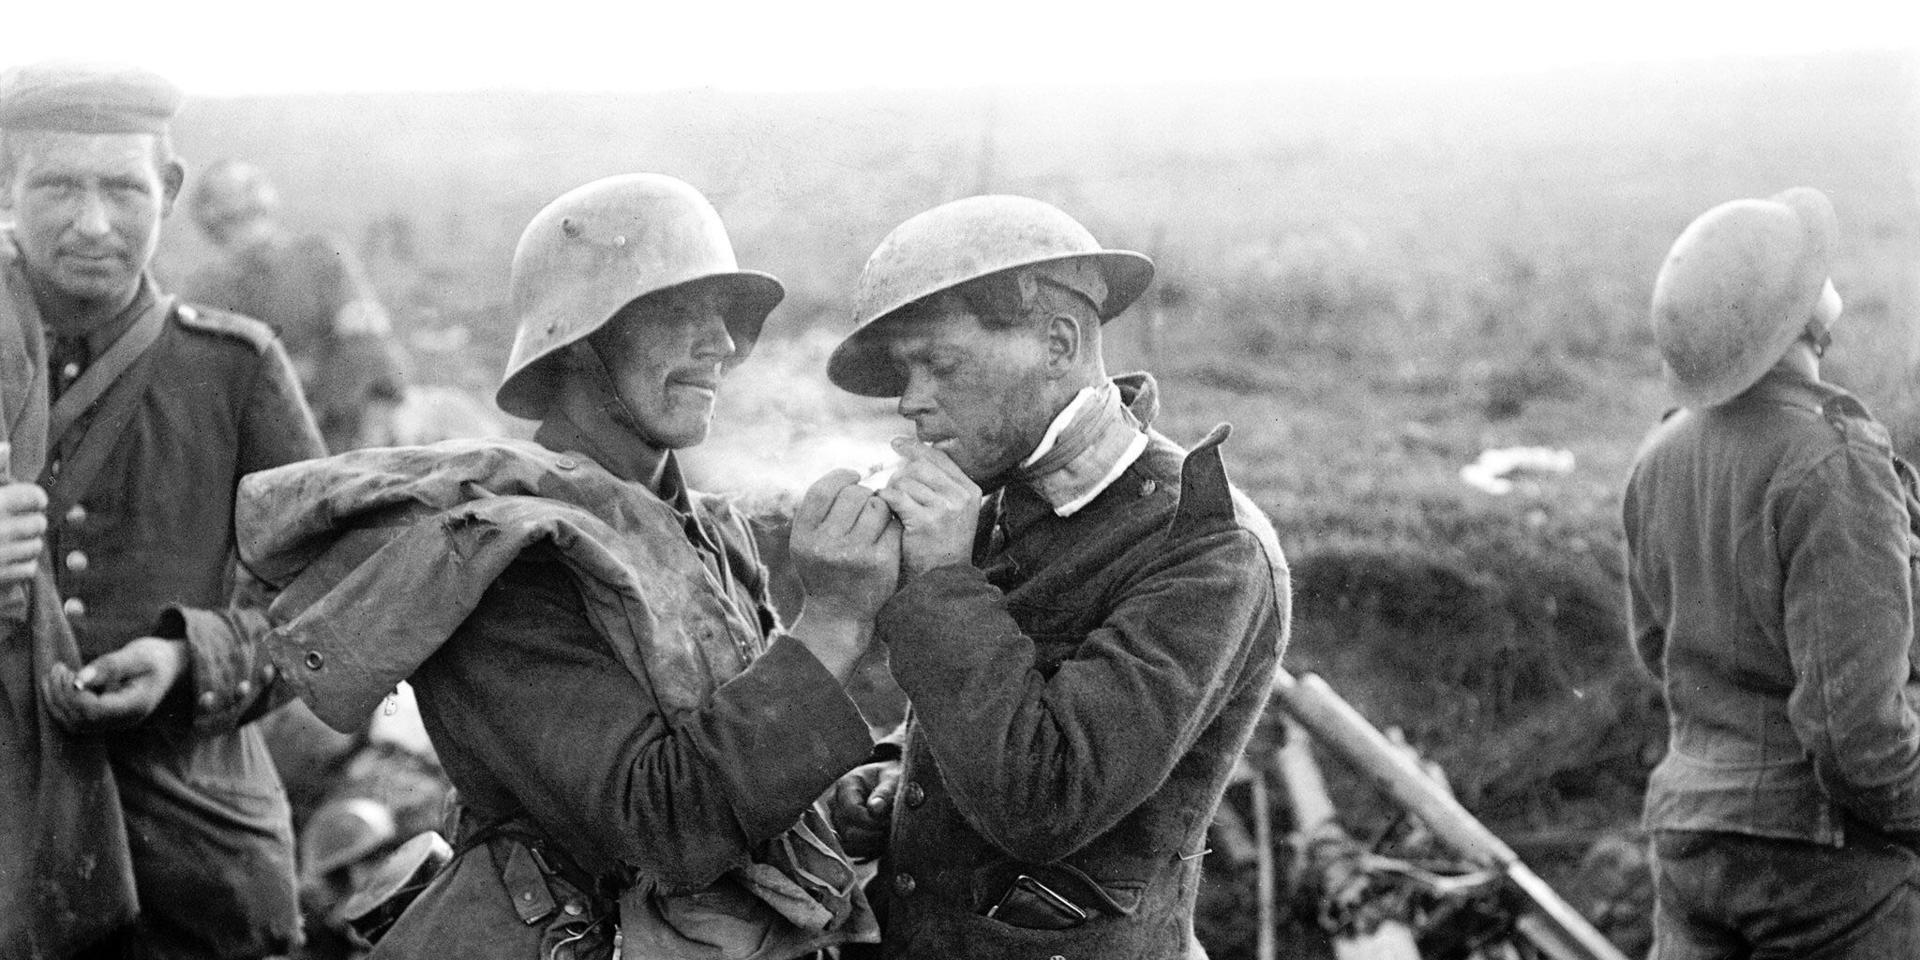 En tysk krigsfånge tänder en cigarett åt en engelsk soldat. Bilden är tagen under första världskriget.